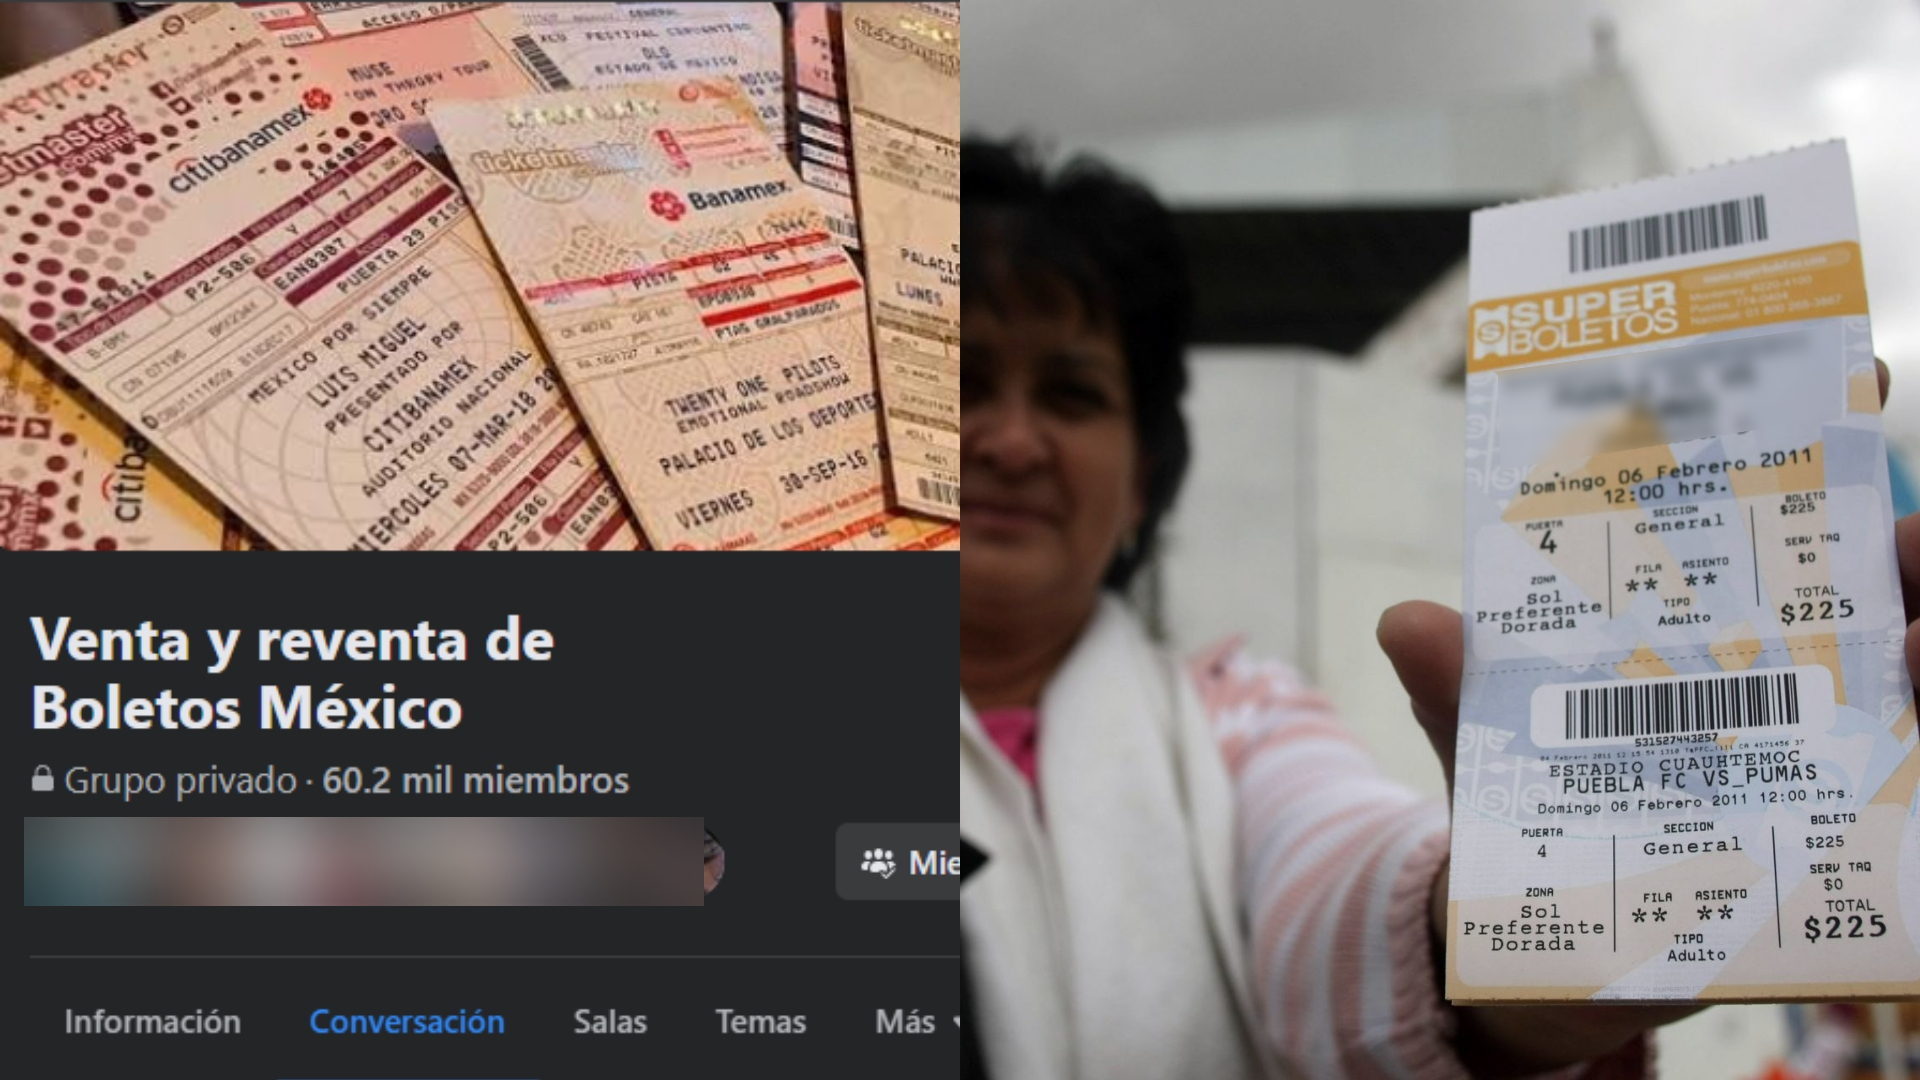 Ticket resale in Mexico has increased through social networks (Photo: Facebook / Cuartoscuro)